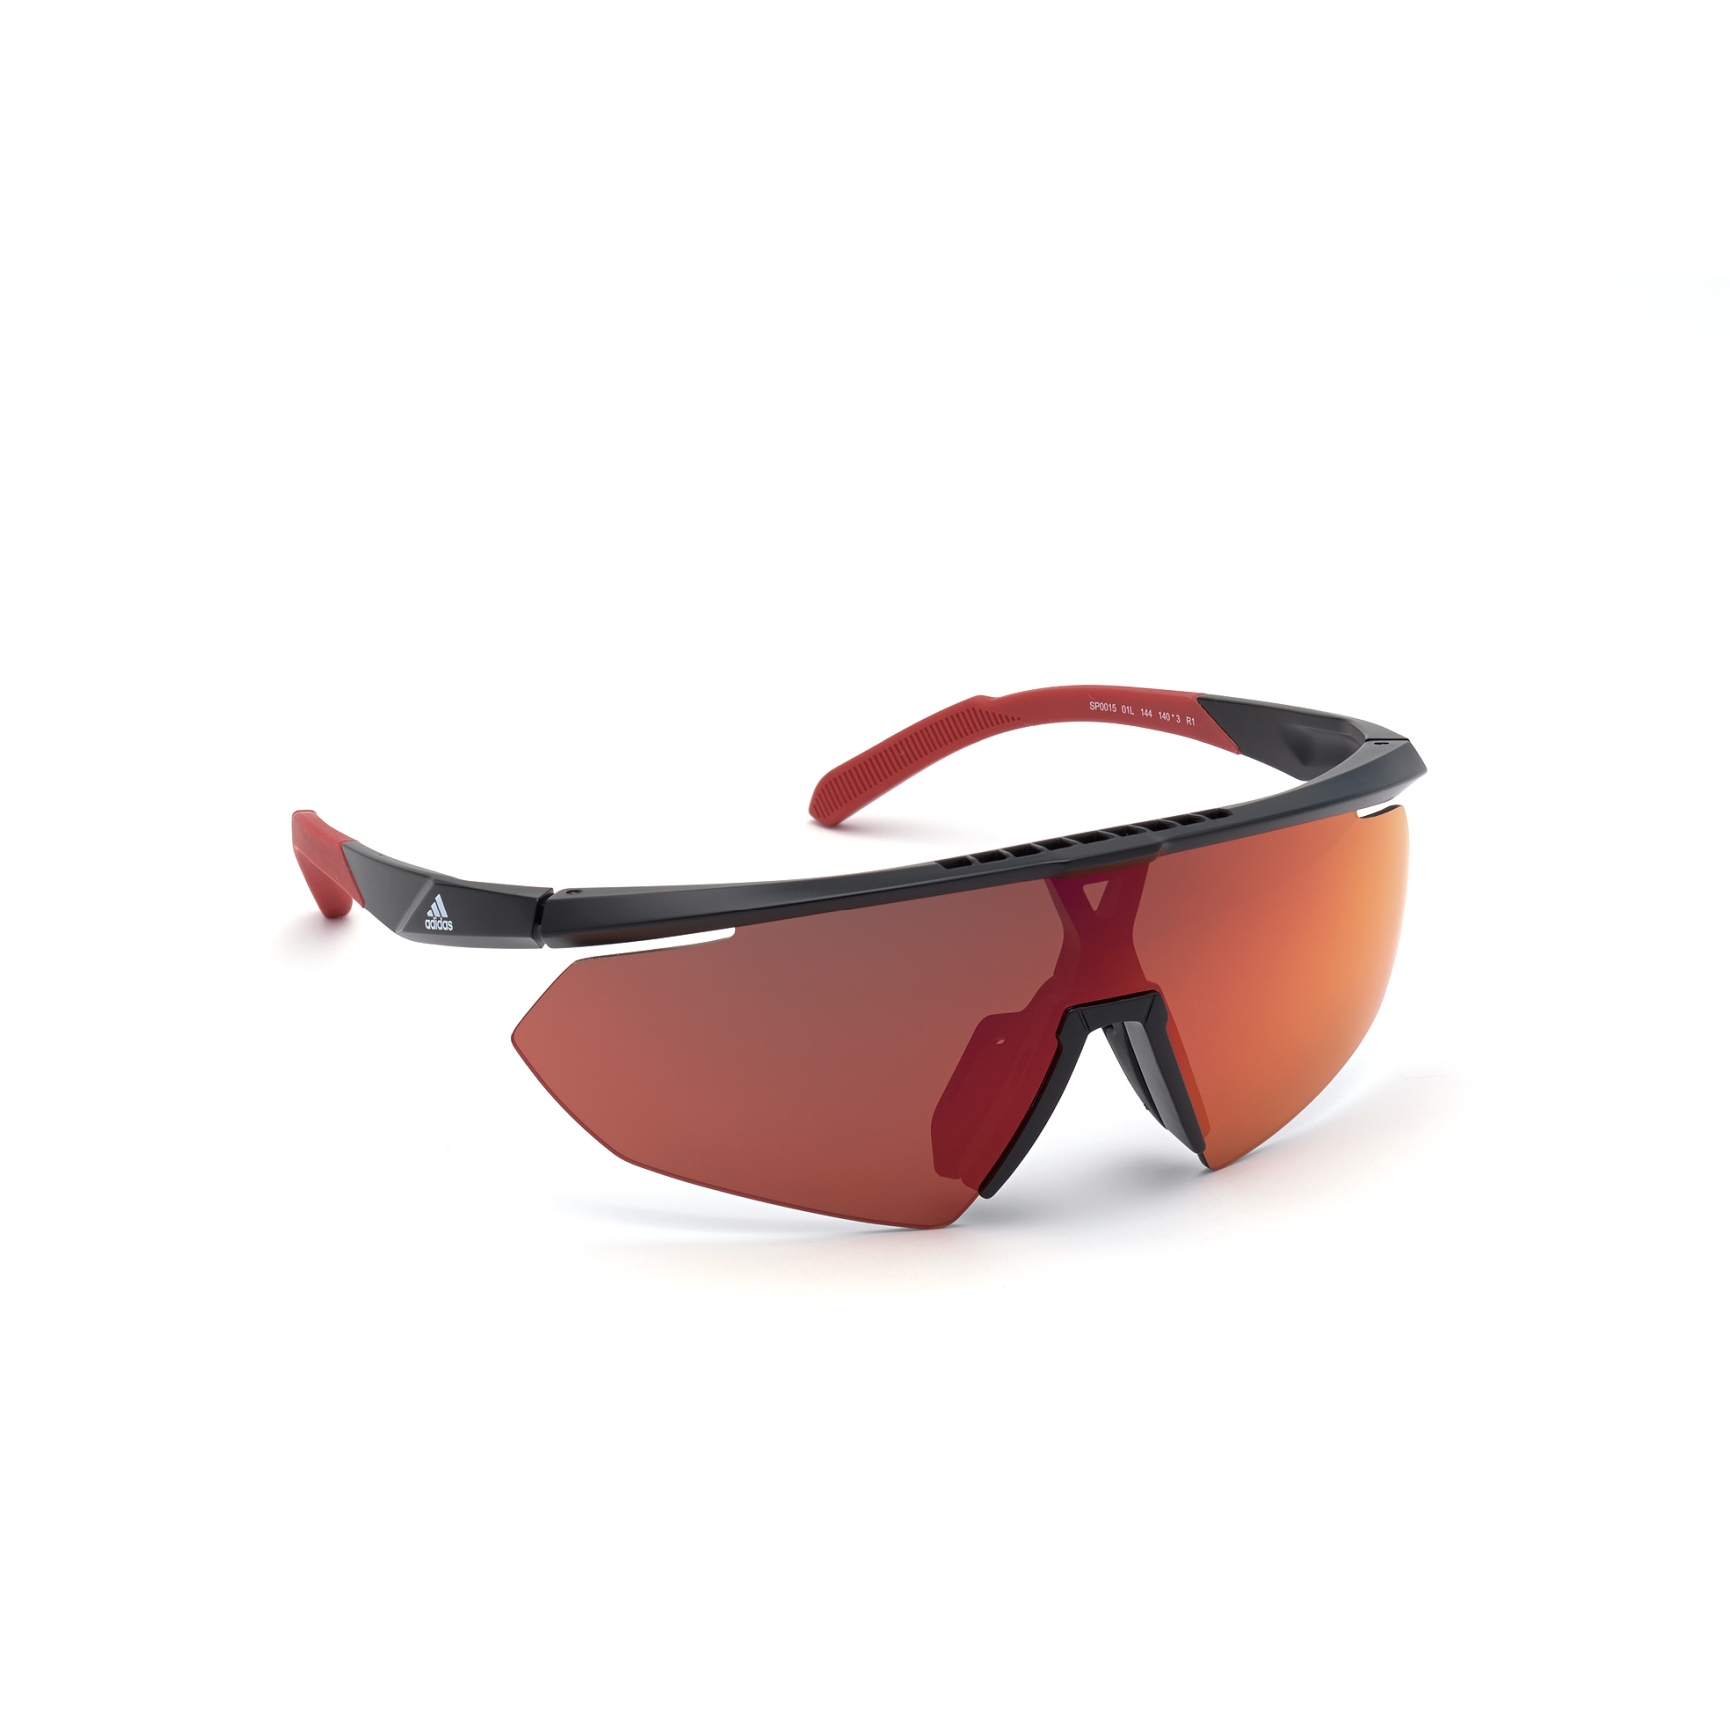 Bild von adidas Sp0015 Injected Sonnenbrille - Shiny Black / Contrast Mirror Red + Orange